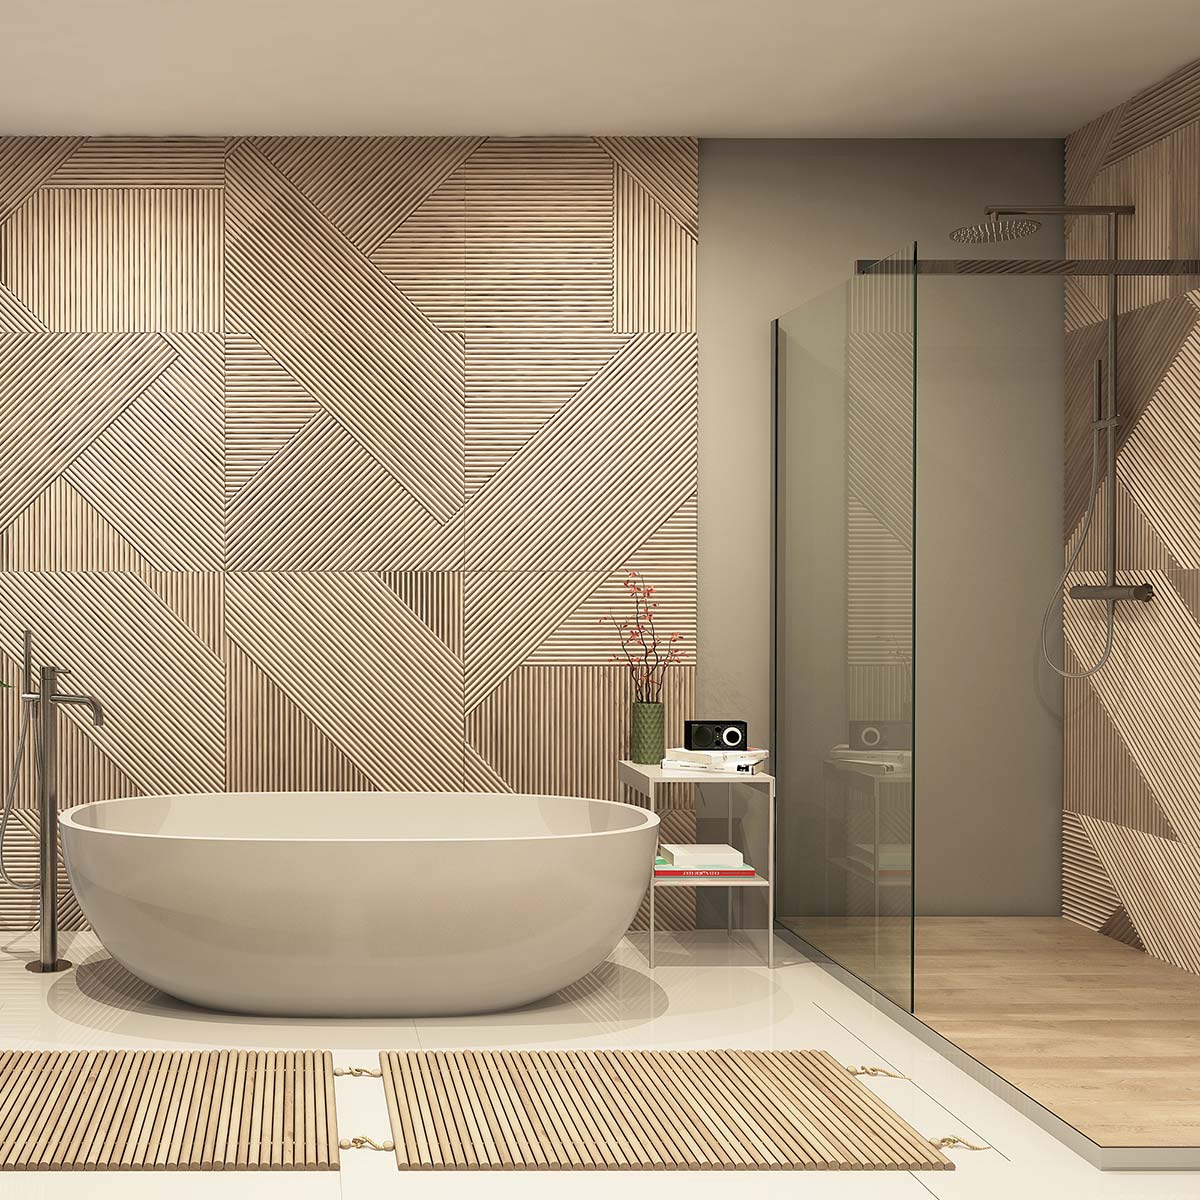 Bany amb parets de fusta amb motius lineals, amb banyera sola i plat de dutxa a la dreta.